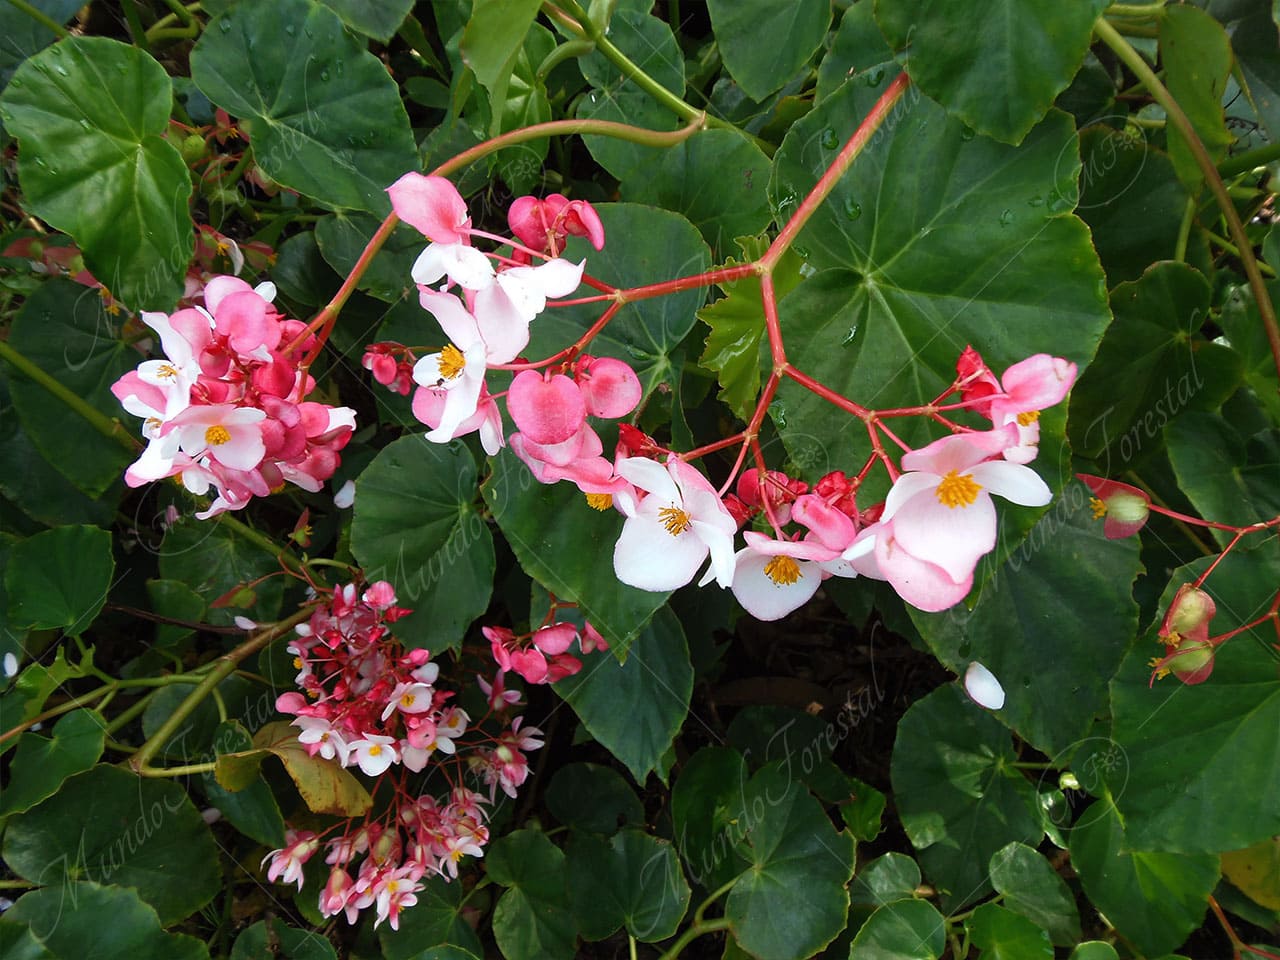 La begonia semperflorens - Begonia semperflorens - MundoForestal